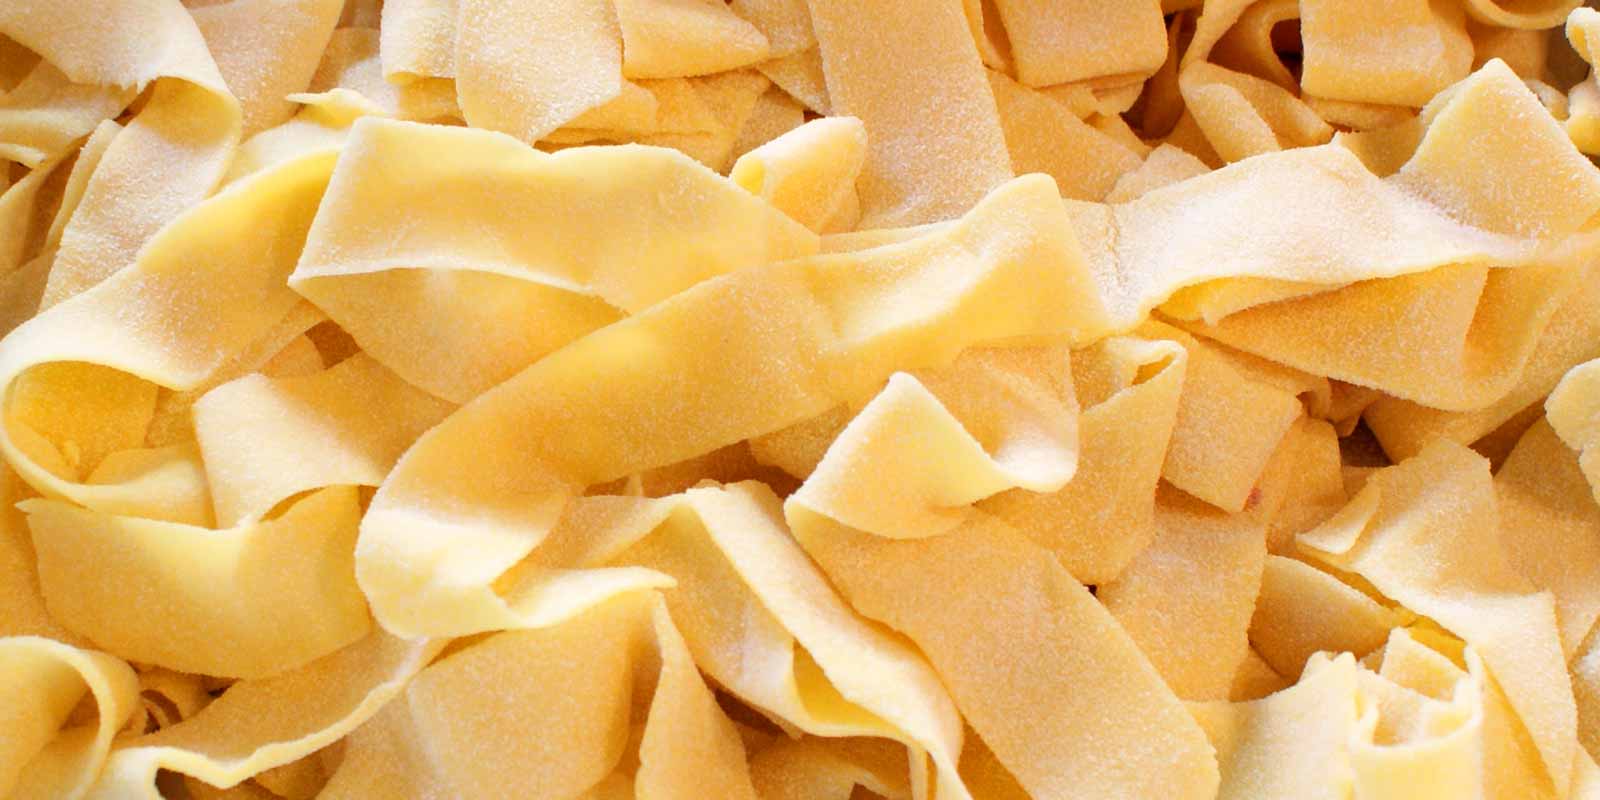 Pasta De Cecco dan tepung Perusahaan Italia De Cecco telah memproduksi pasta dan tepung dengan kualitas terbaik sejak tahun 1886.
Lihat diri mu sendiri!